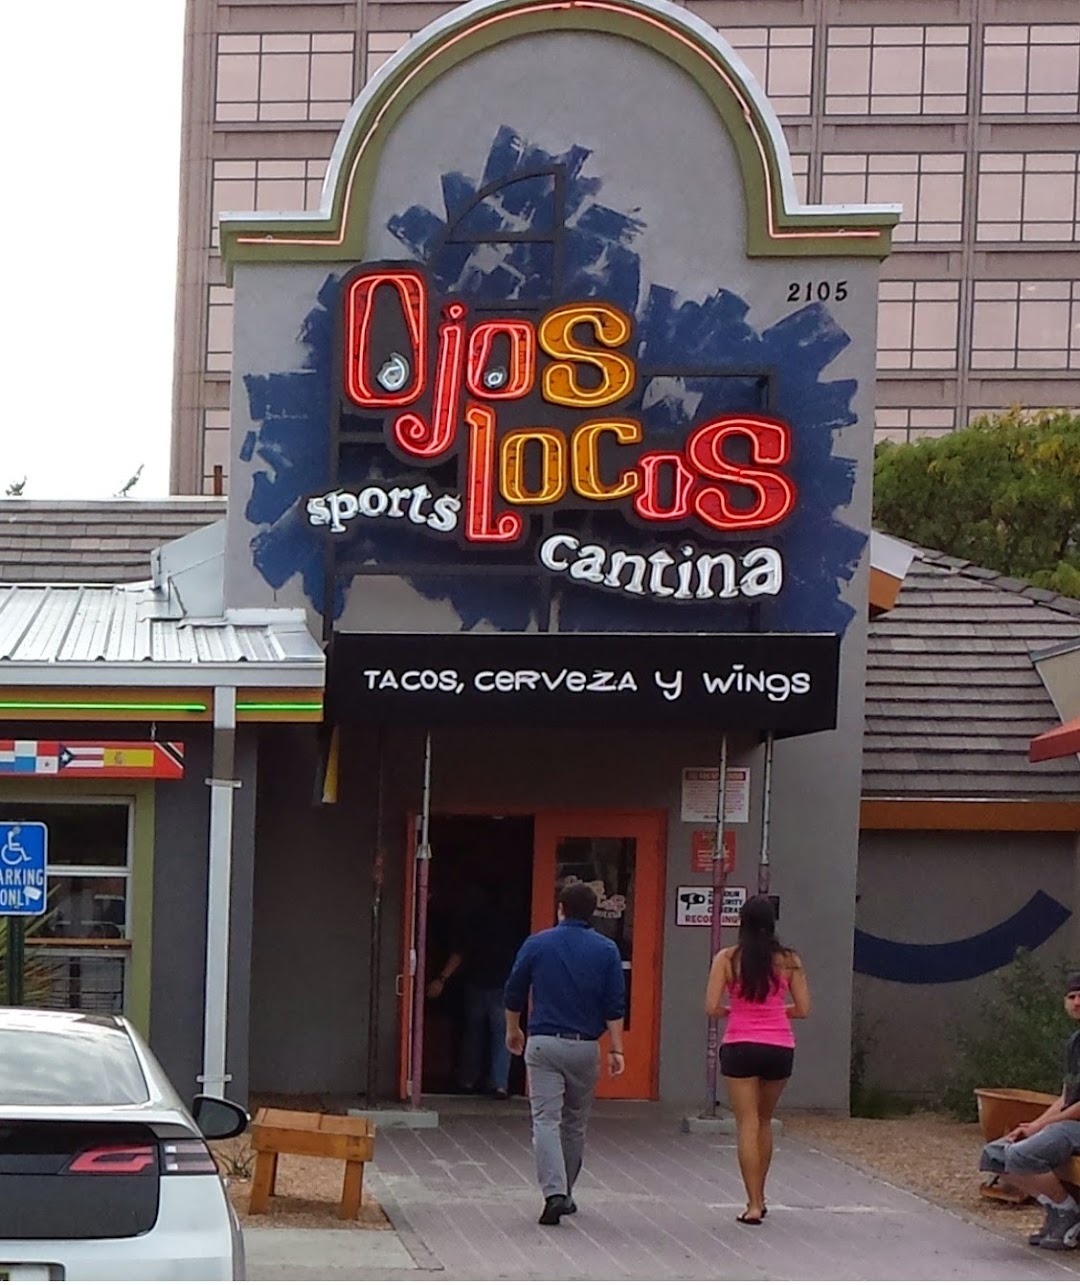 Ojos Locos Sports Cantina - Albuquerque